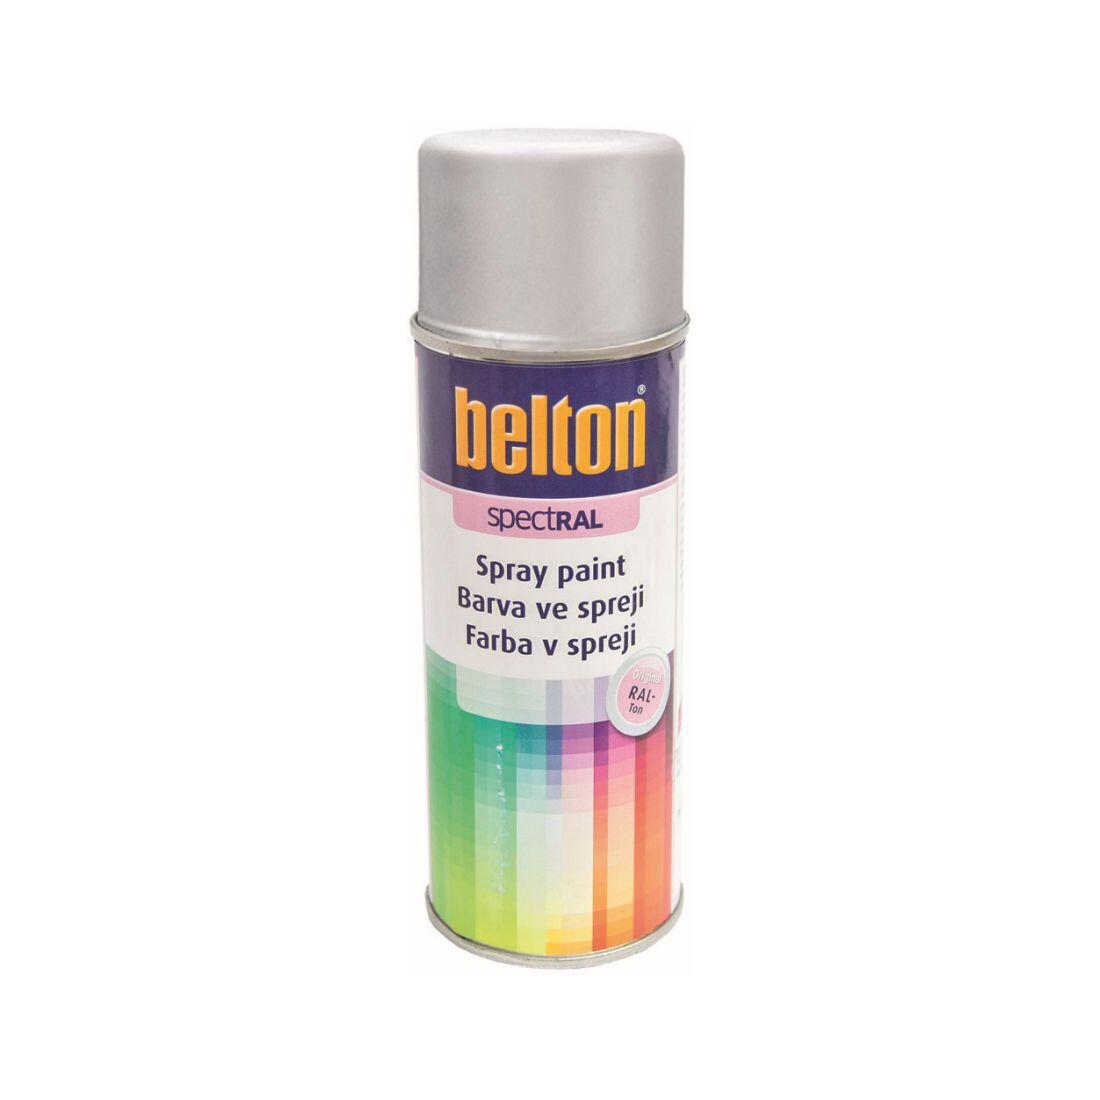 barva ve spreji BELTON RAL 9006, 400ml BÍ Al 0.31 Kg MAXMIX Sklad14 825383 15